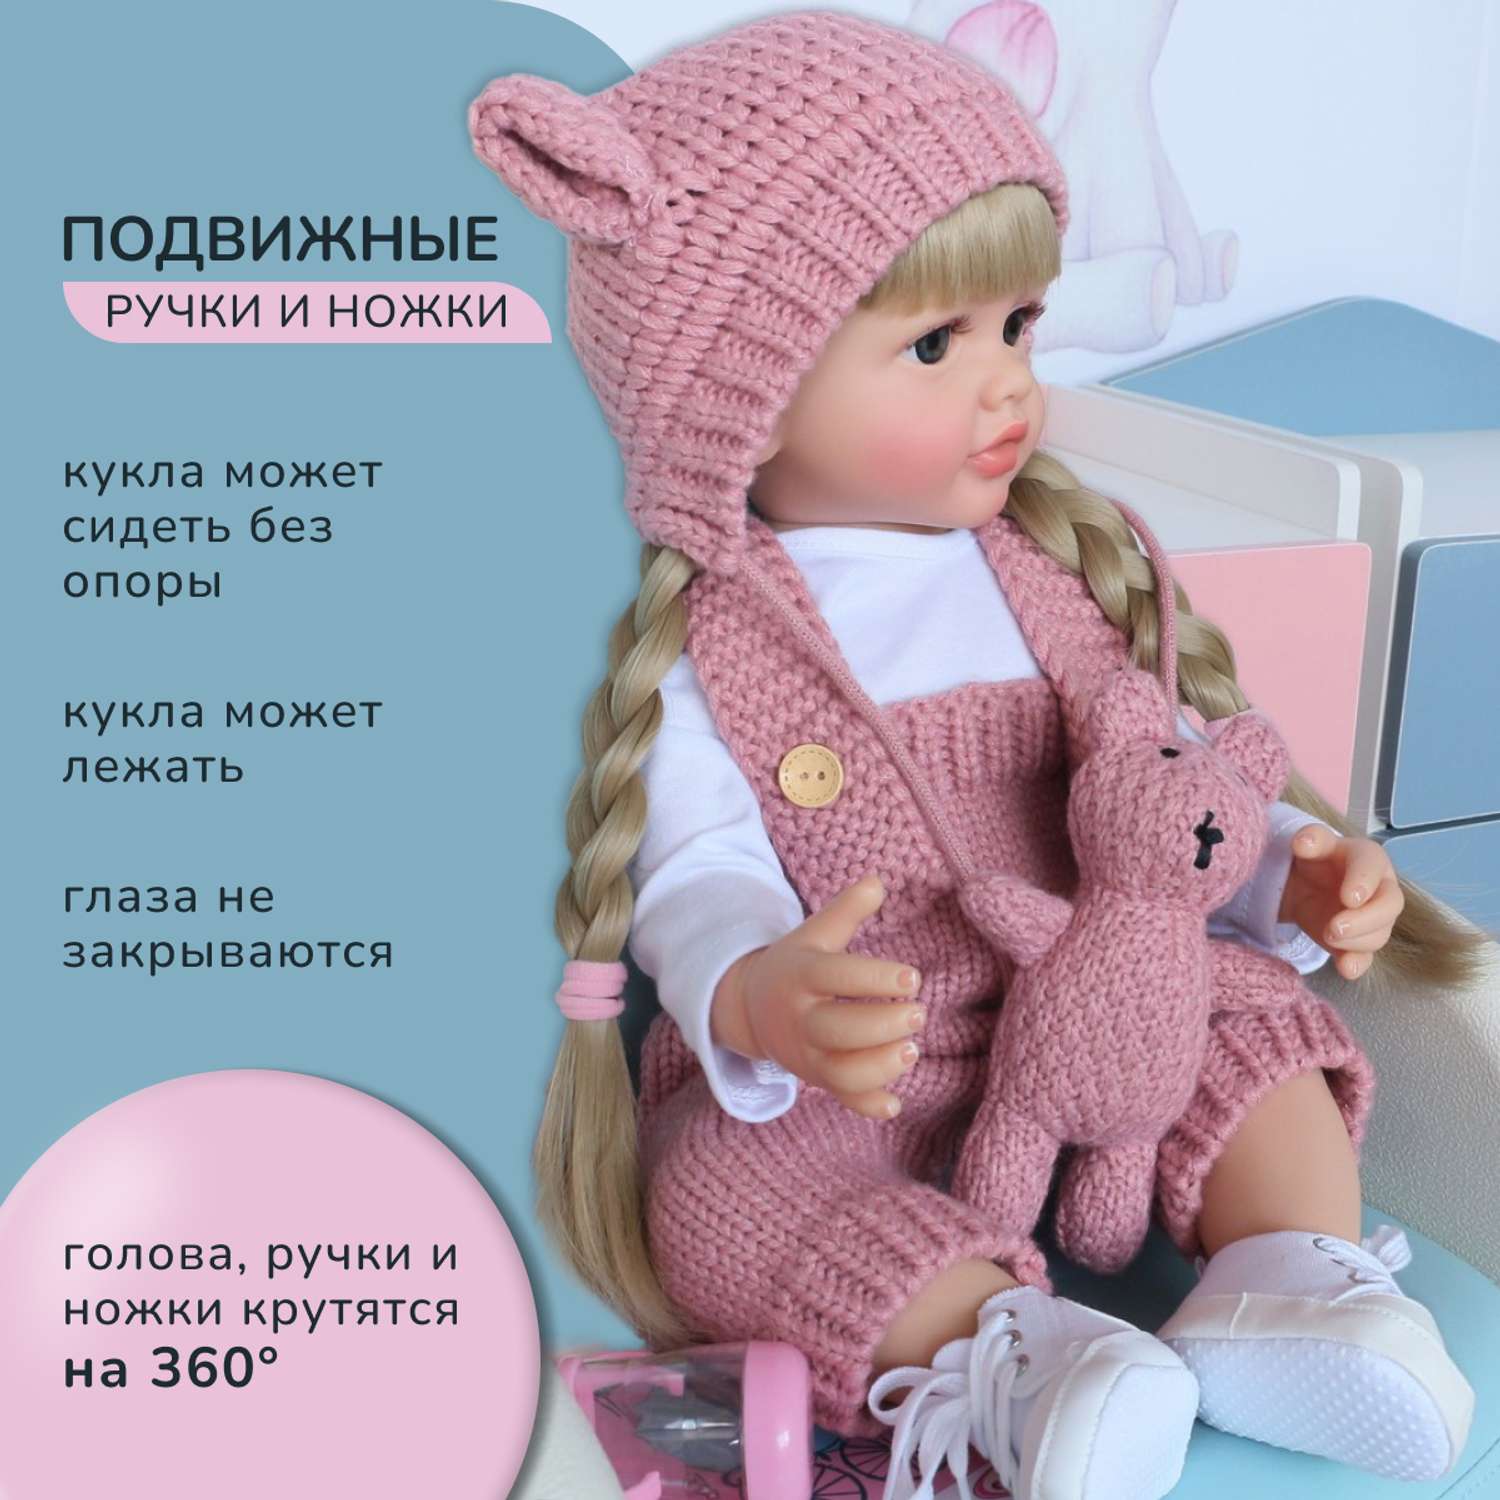 Кукла Реборн QA BABY Александра девочка большая пупс набор игрушки для девочки 55 см 5510 - фото 11